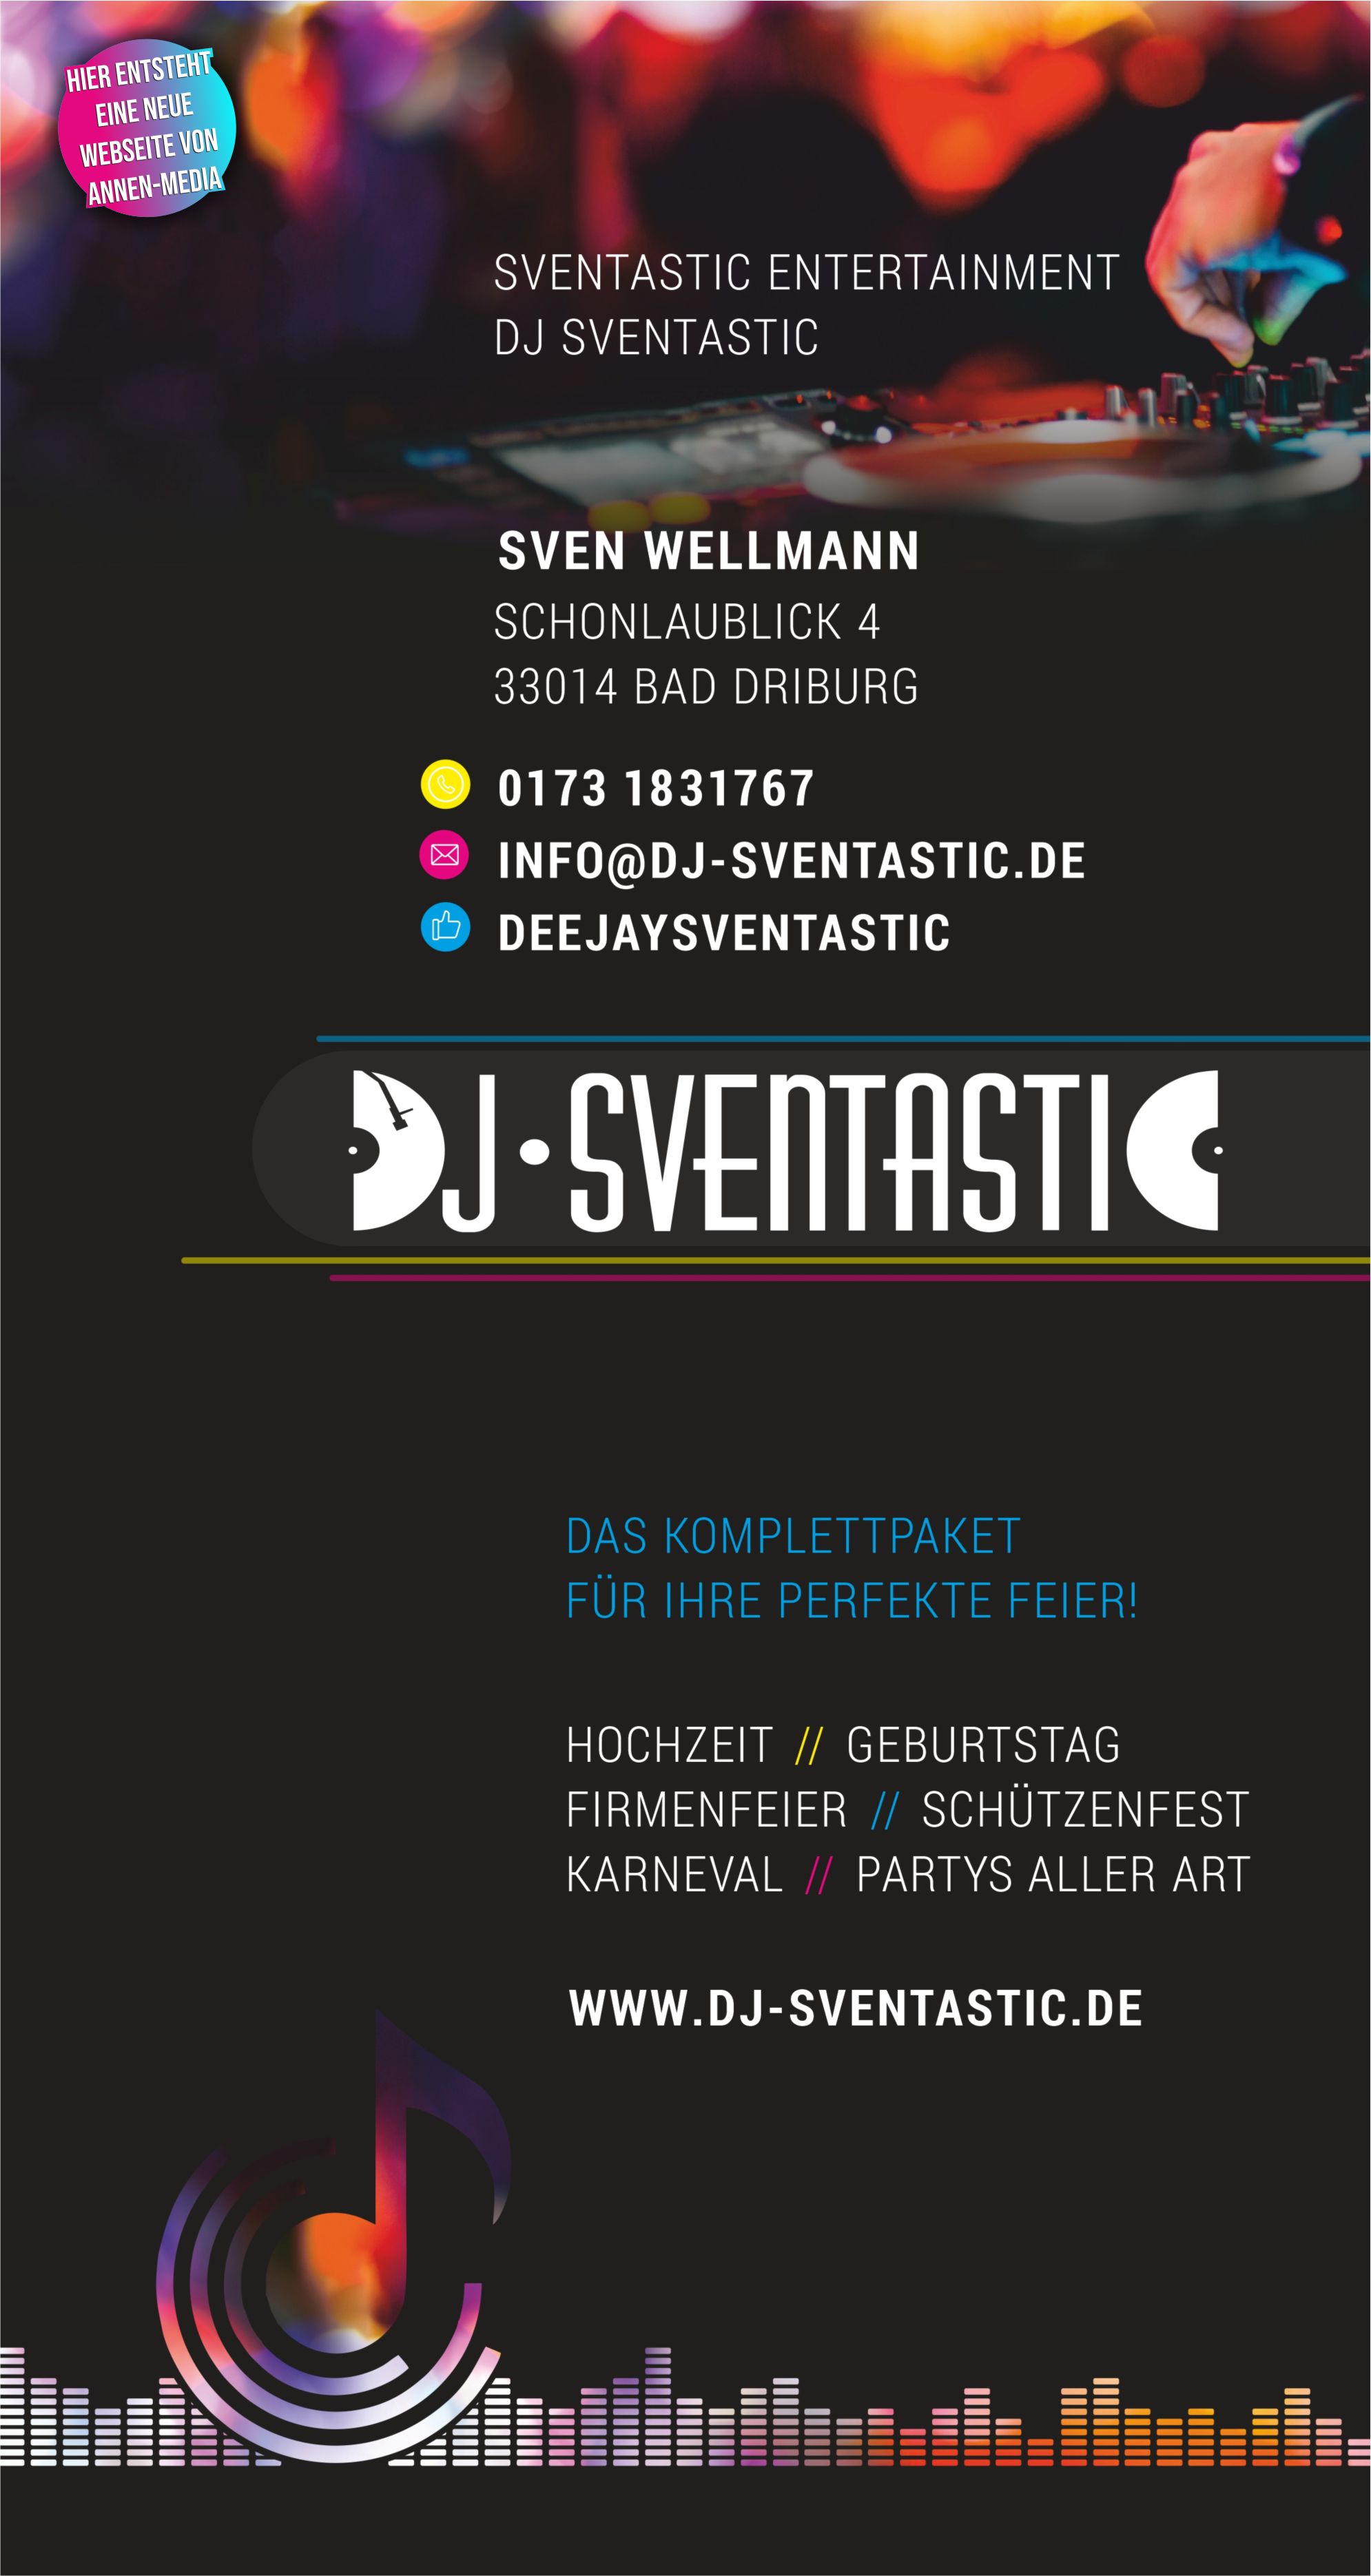 DJ, Hcohzeit, Geburtstag, Firmenfeier, Schützenfest, Karneval, Partys aller Art, Events, Musik, Feier, Höxter, Warburg, Paderborn, Hochstift, 